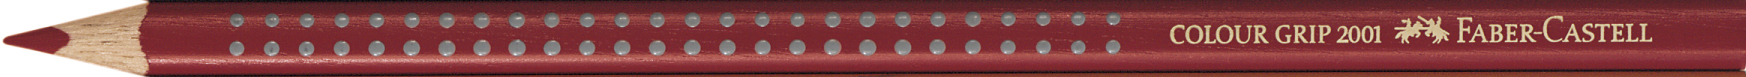 FABER-CASTELL Crayon de couleur Colour Grip 112492 rouge